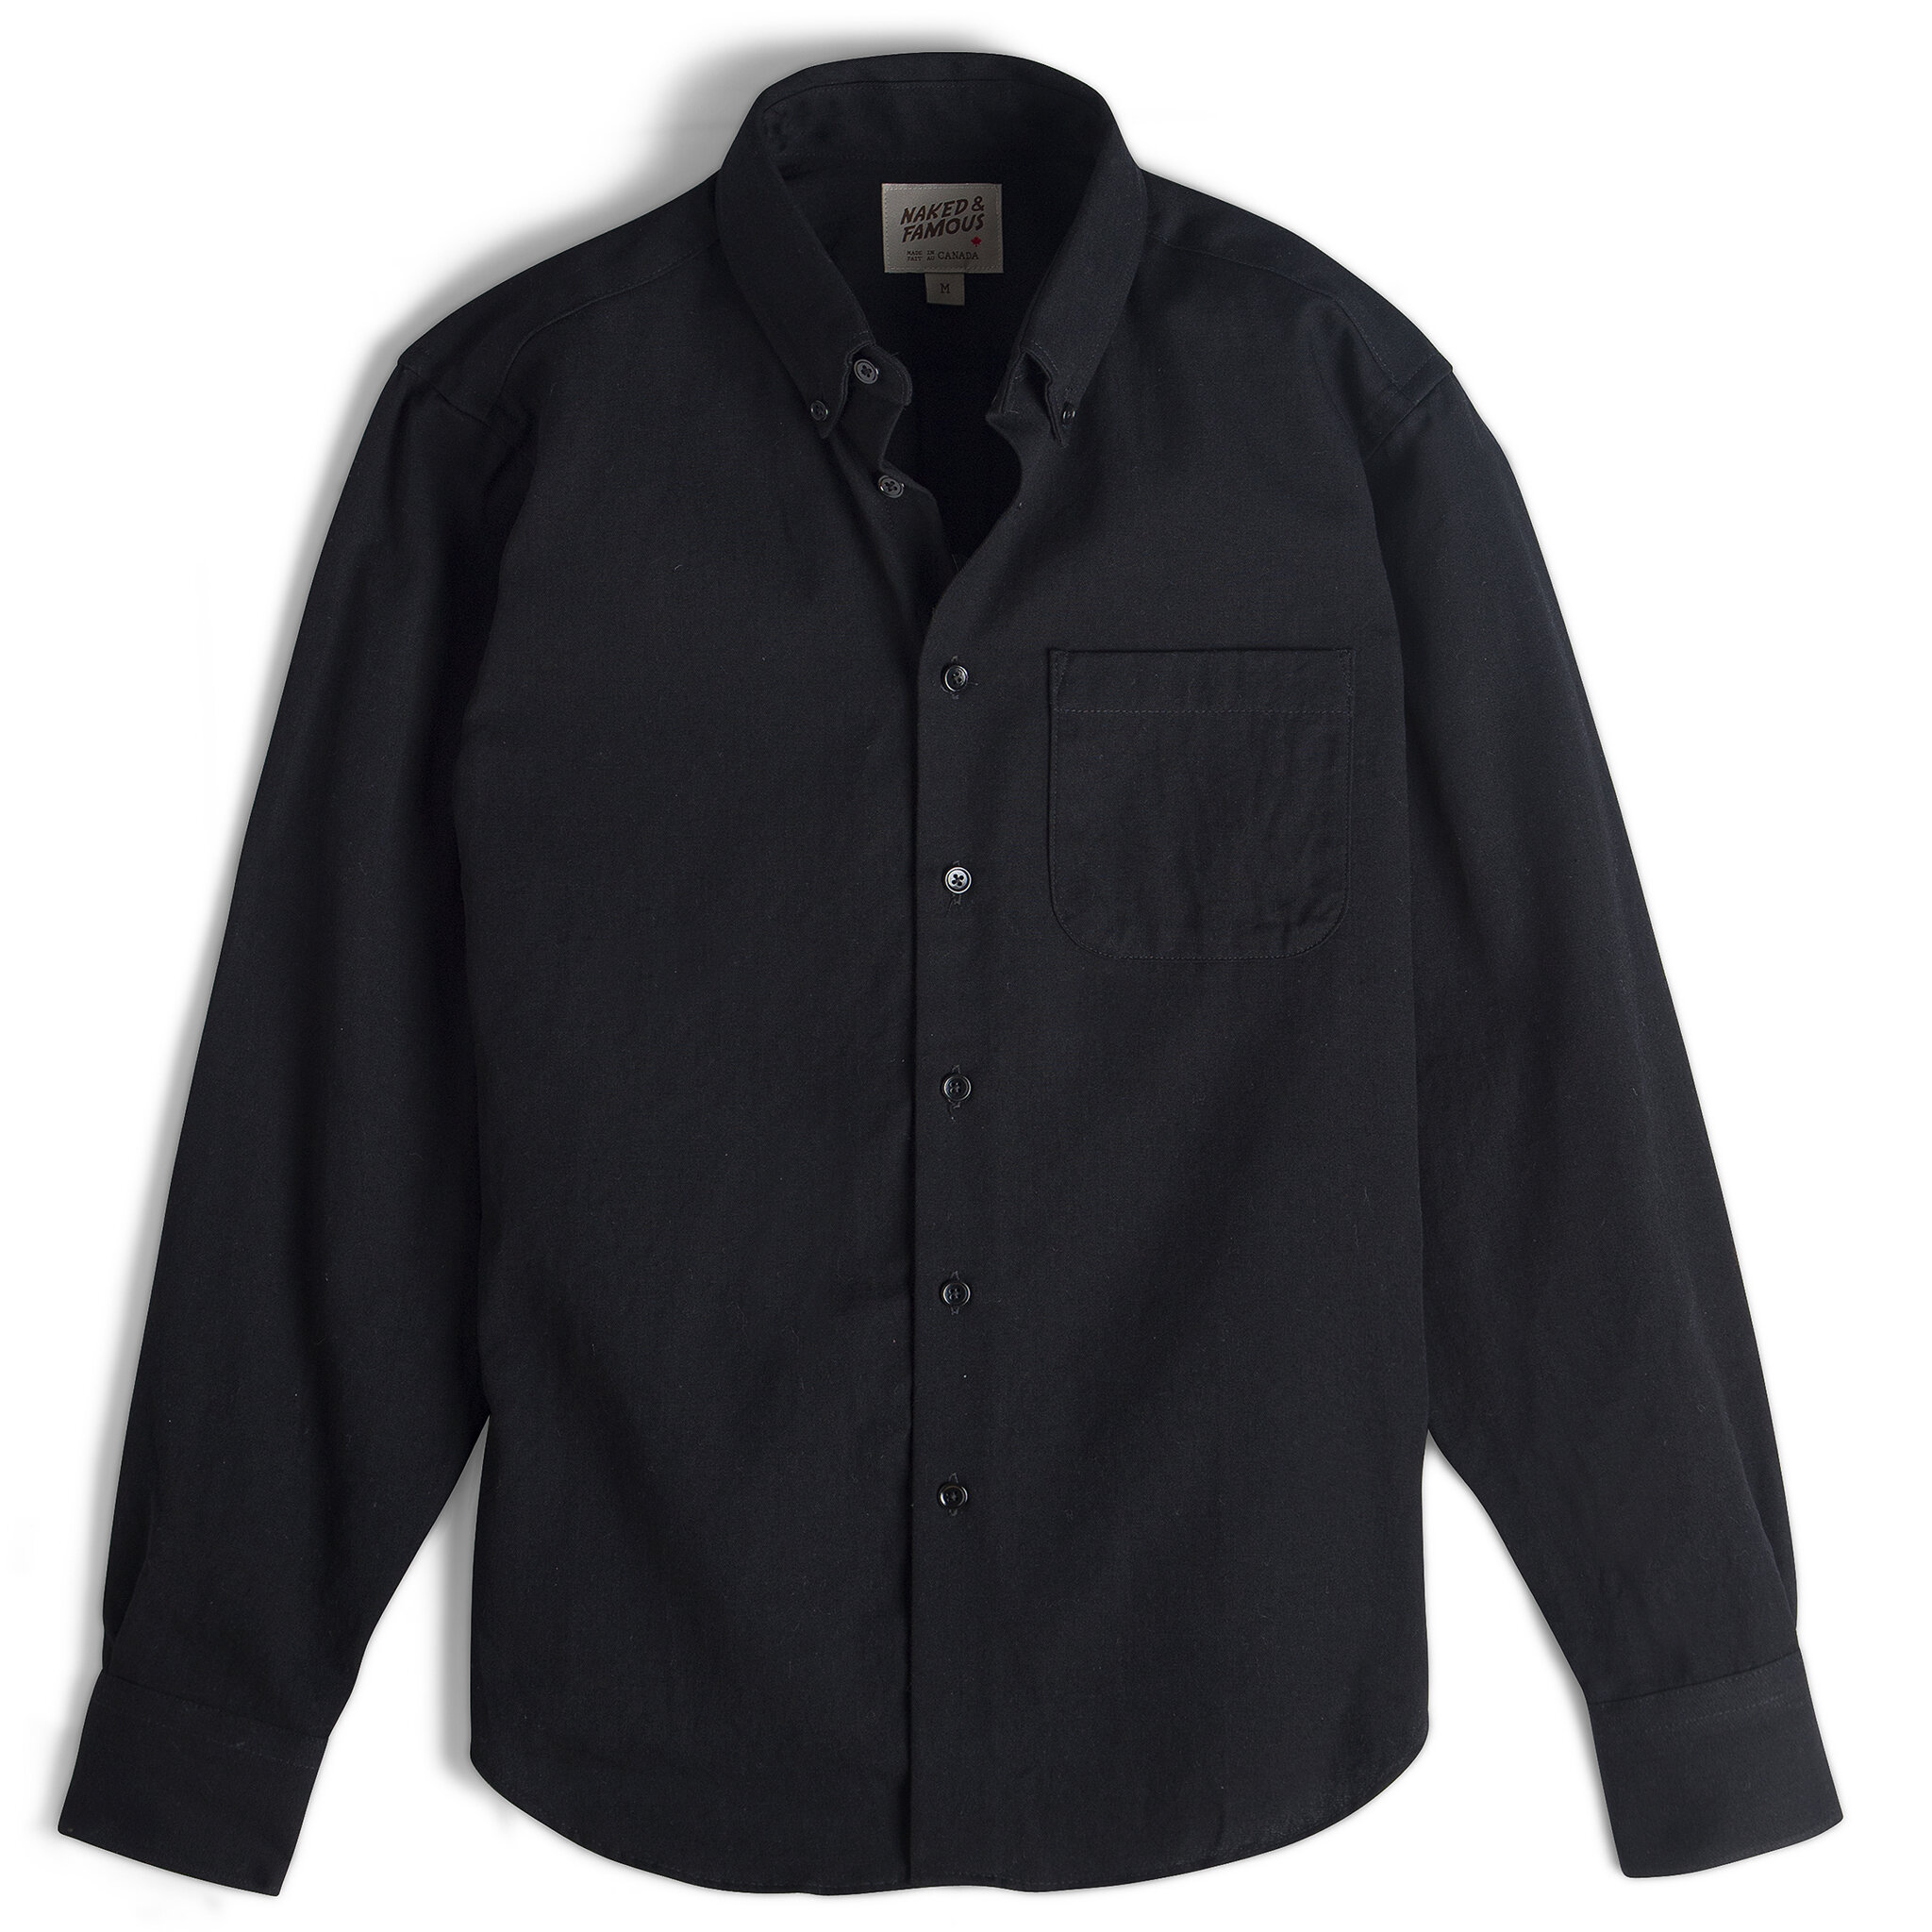  Easy Shirt - Black Short Slub Denim - flat front 